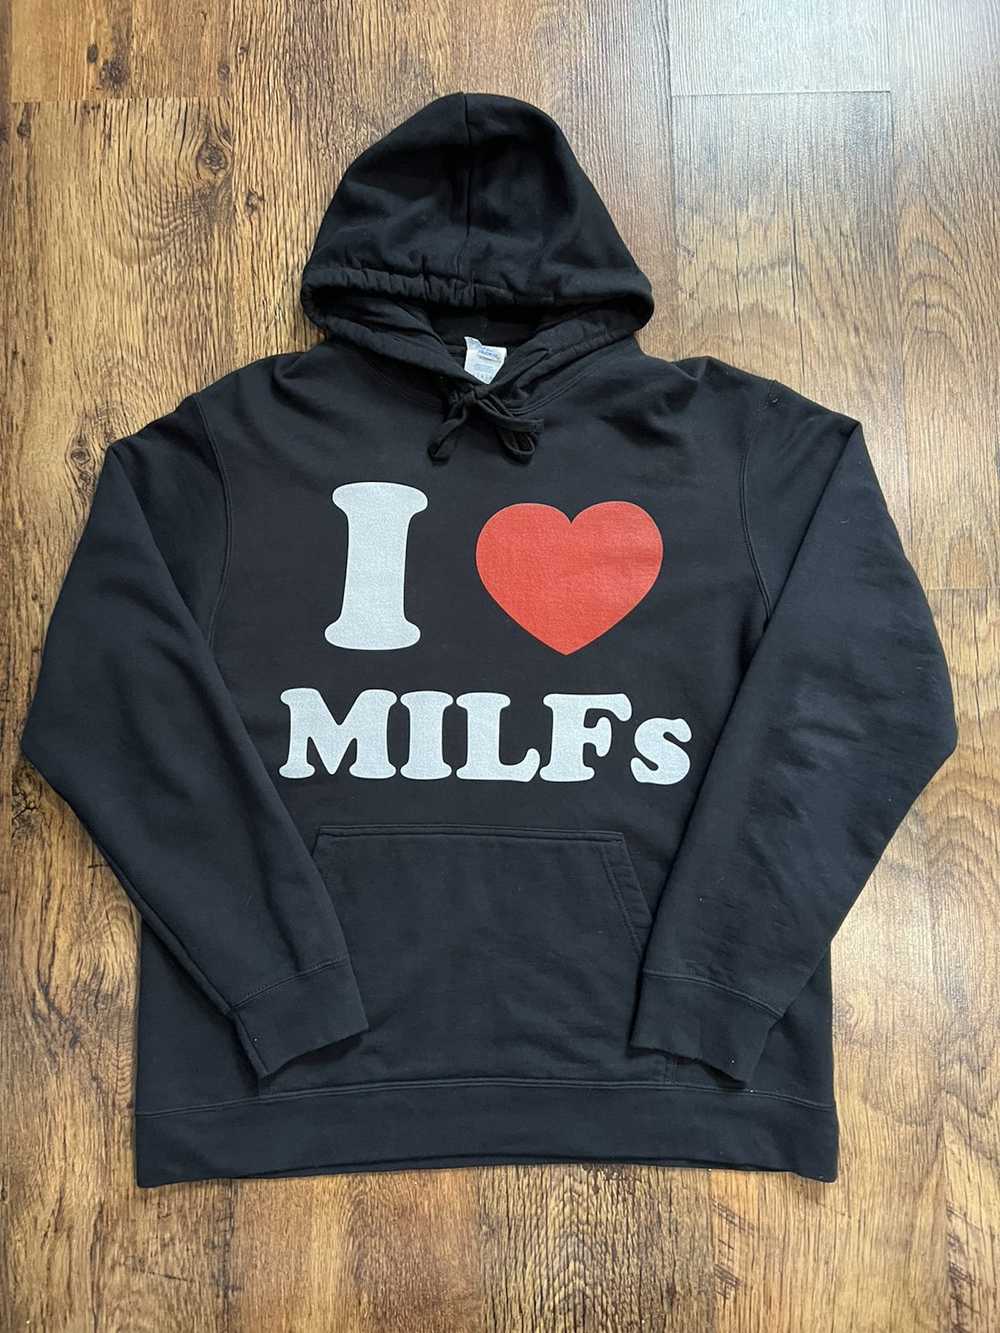 Made In Usa × Vintage I love milfs hoodie sweatsh… - image 6